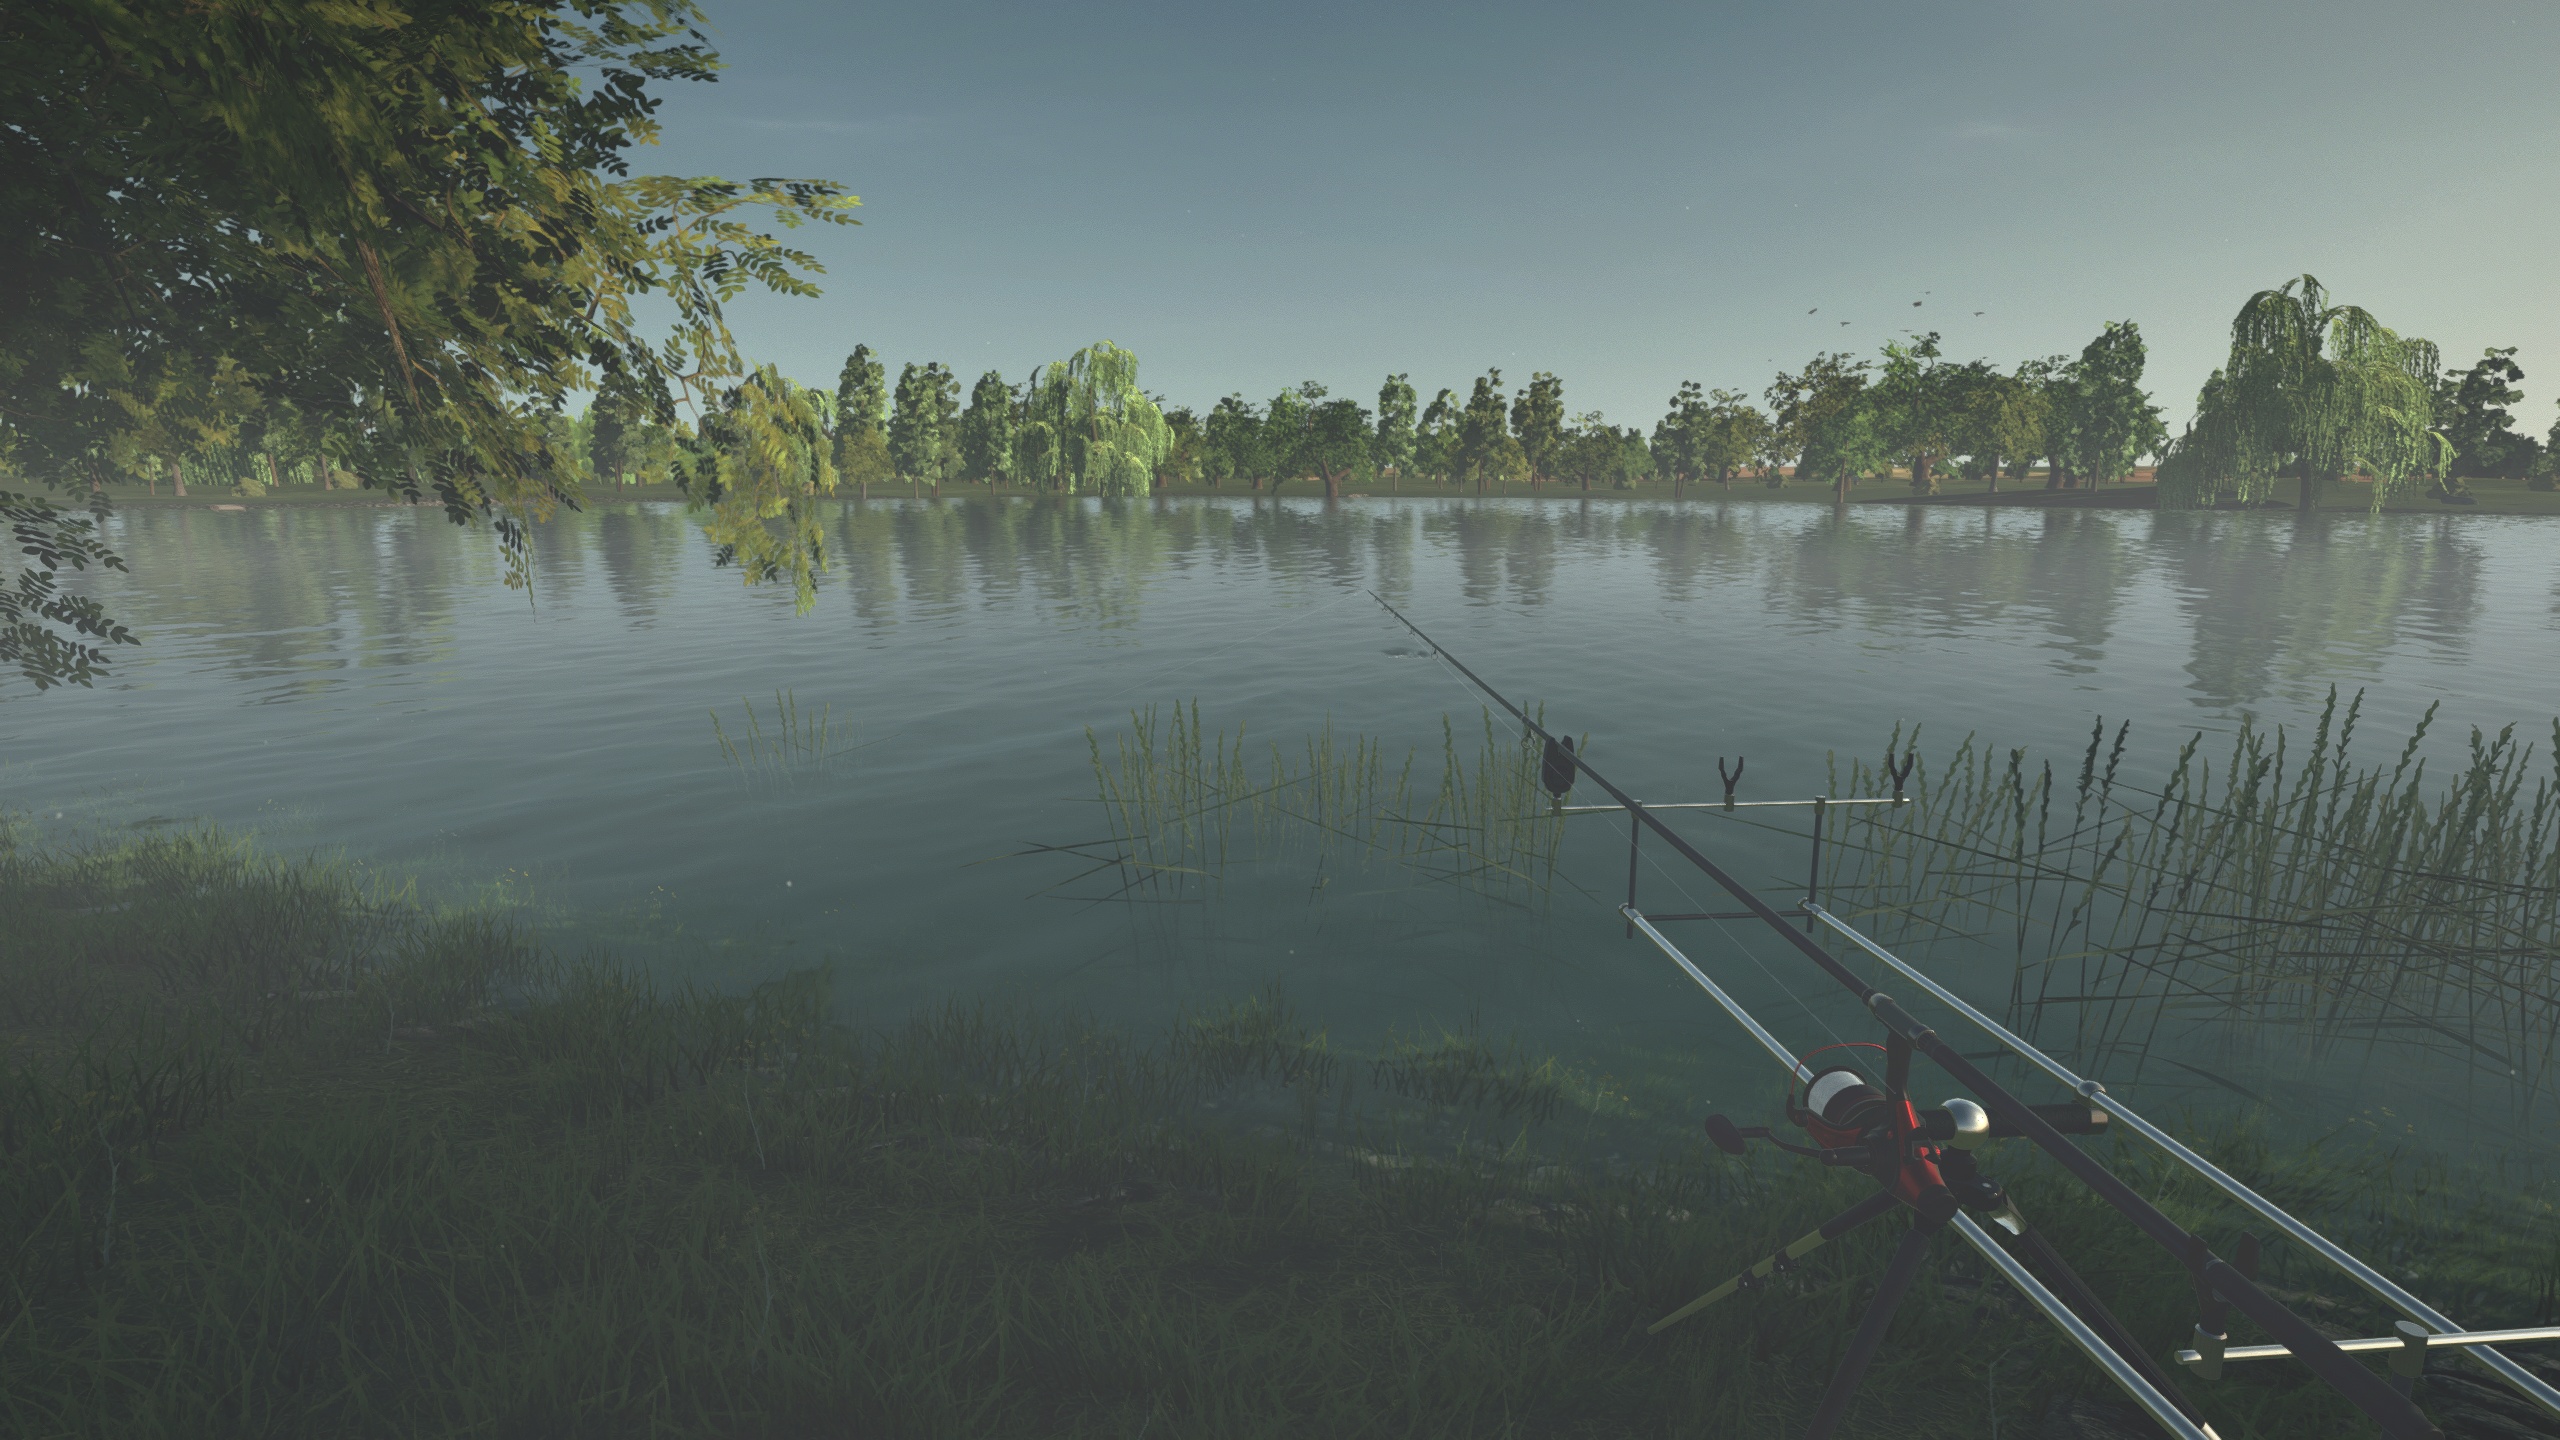 Ultimate Fishing Simulator Free Download